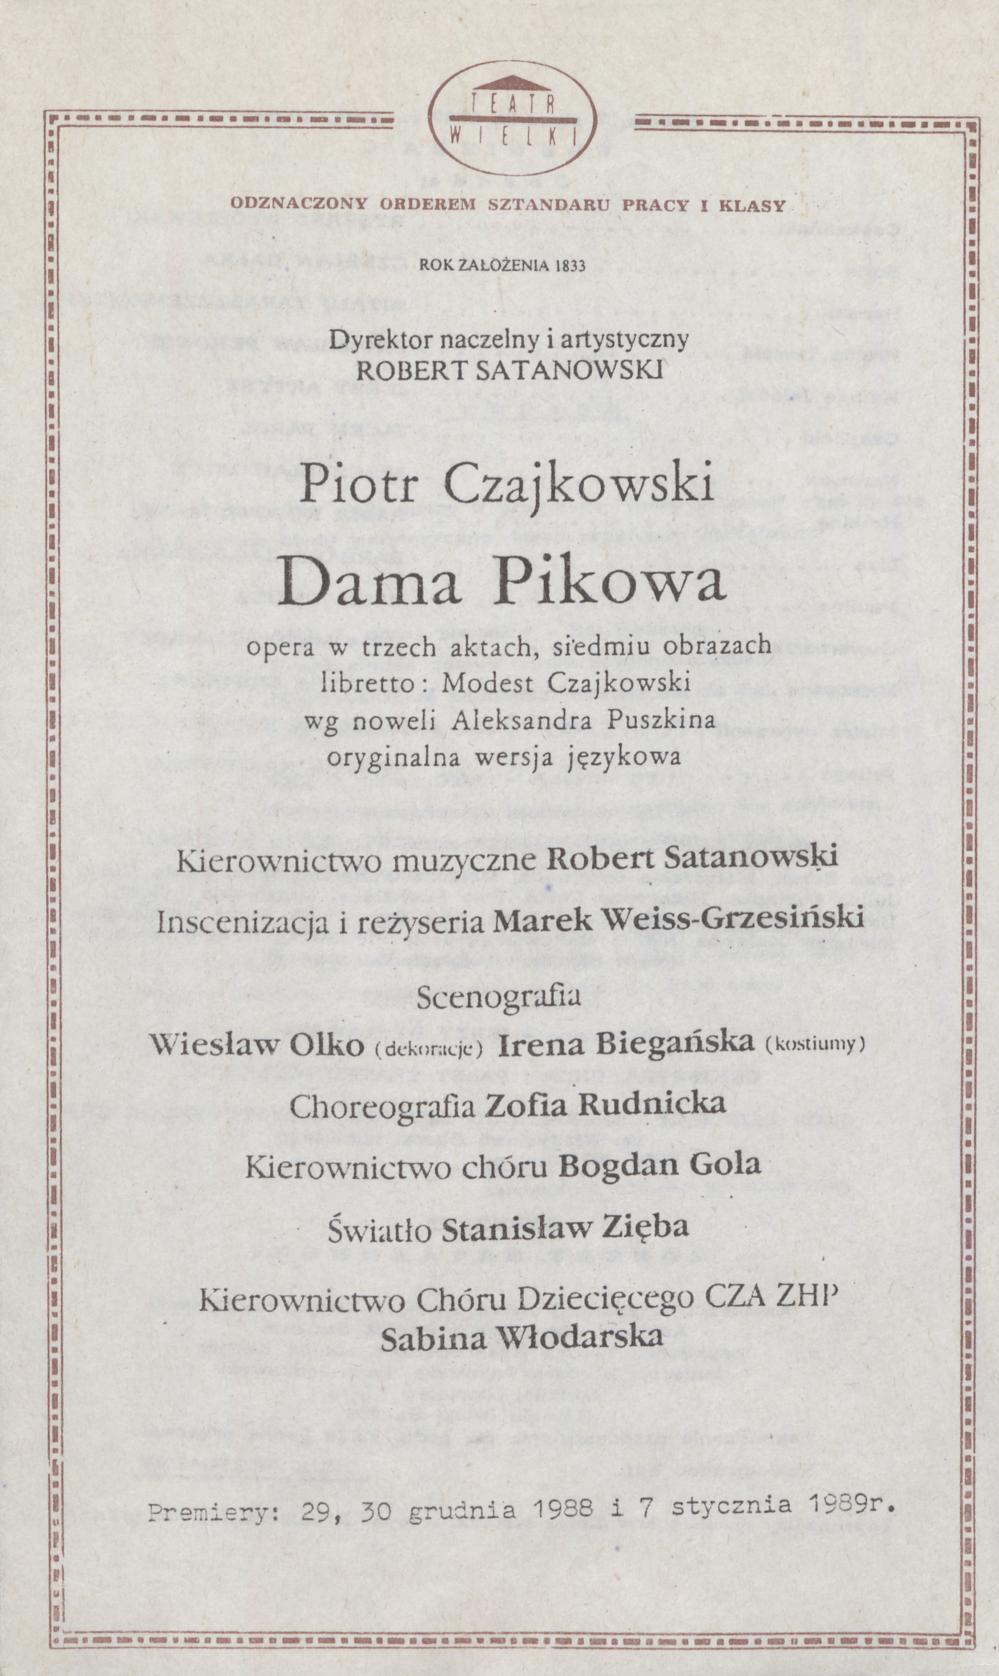 Wkładka premierowa – premiera III „Dama pikowa” Piotr Czajkowski 7-01-1989